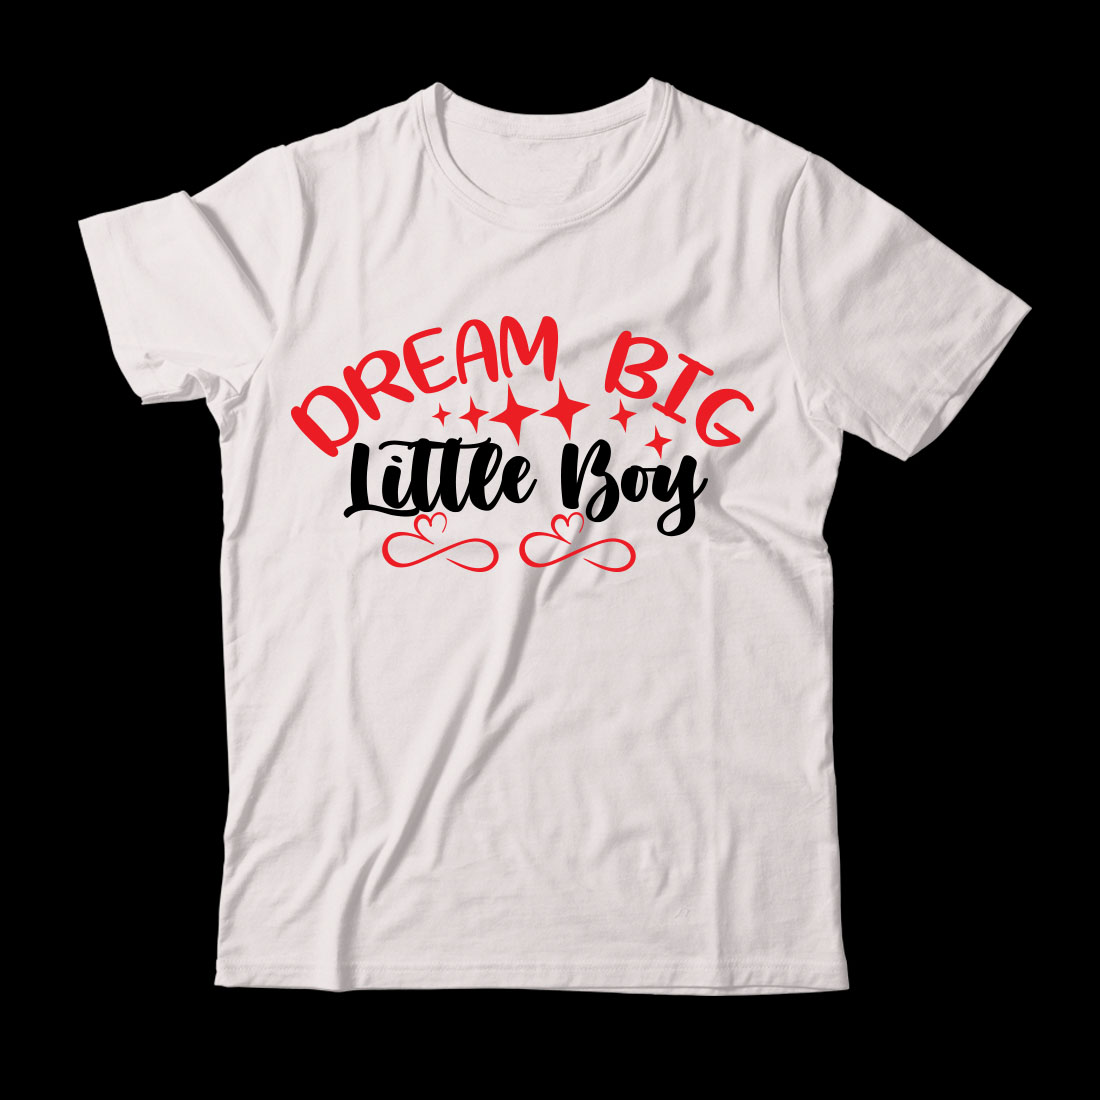 White t - shirt that says dream big like boy.